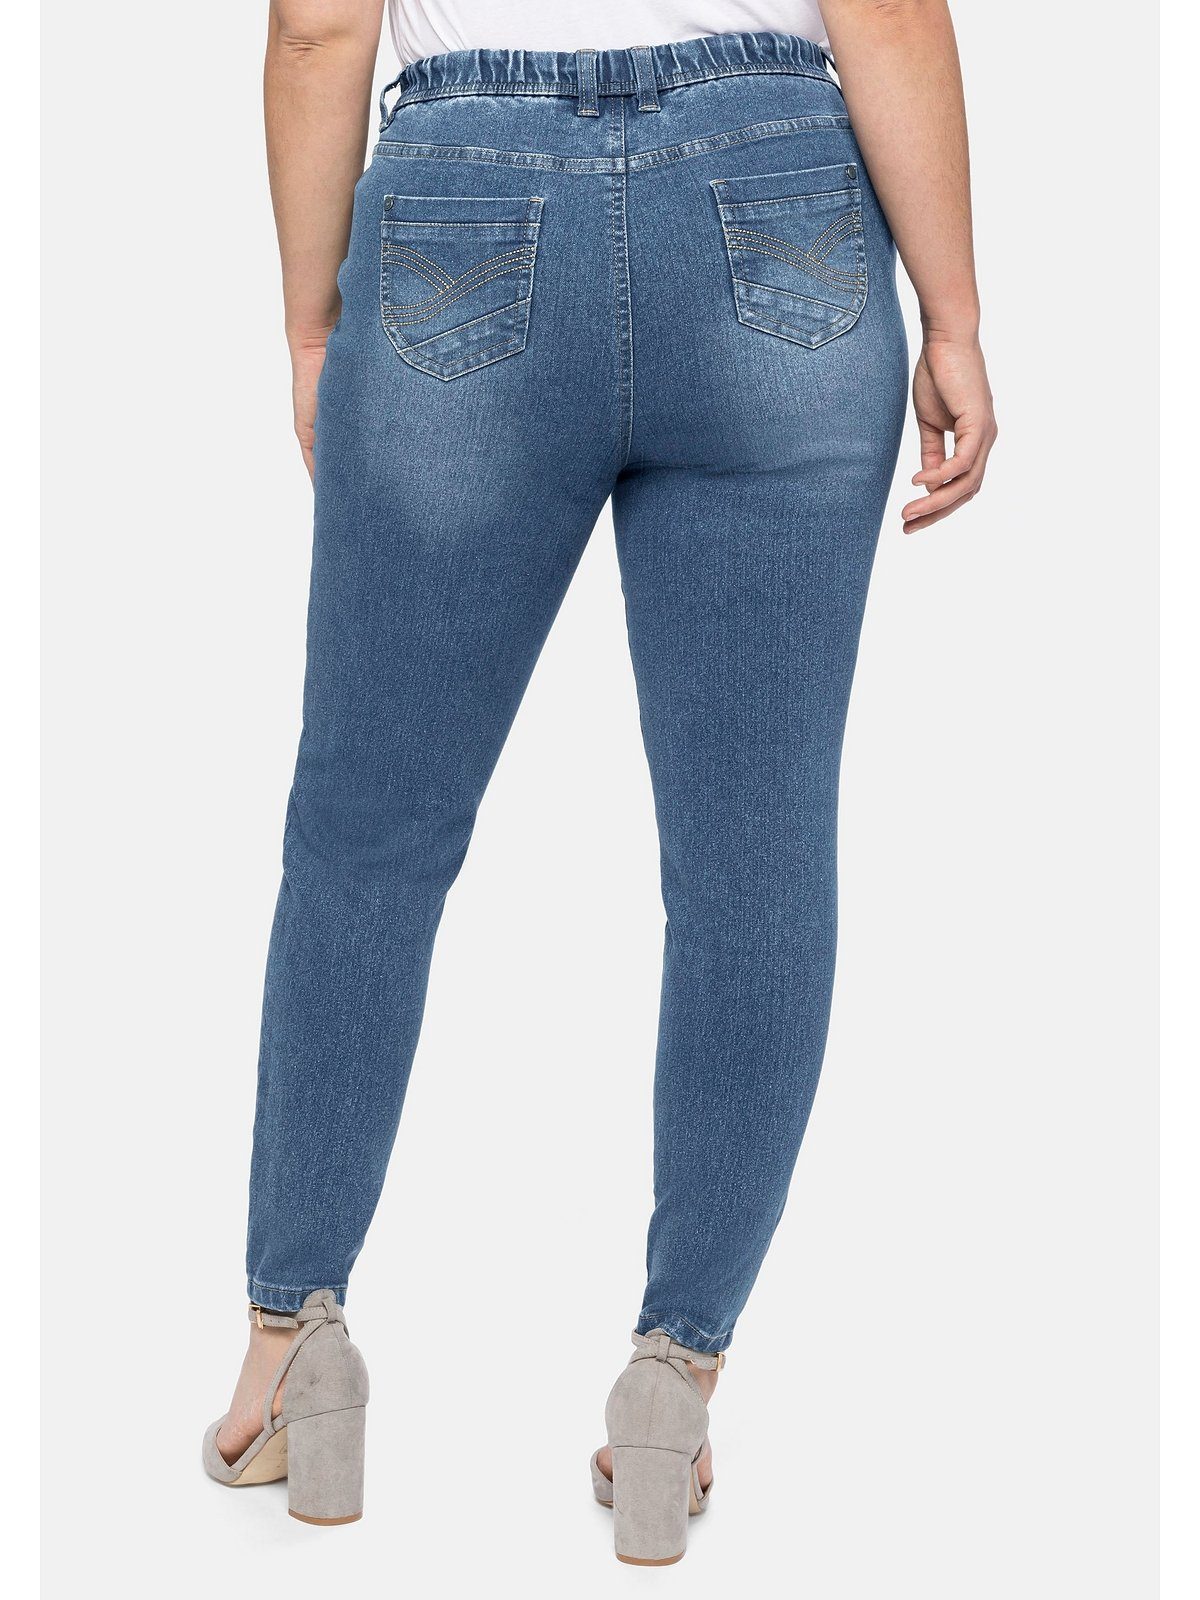 Gehen Sie zum Online-Shop! Sheego Stretch-Jeans Große Größen mit Gürtelschlaufen Gummibund und